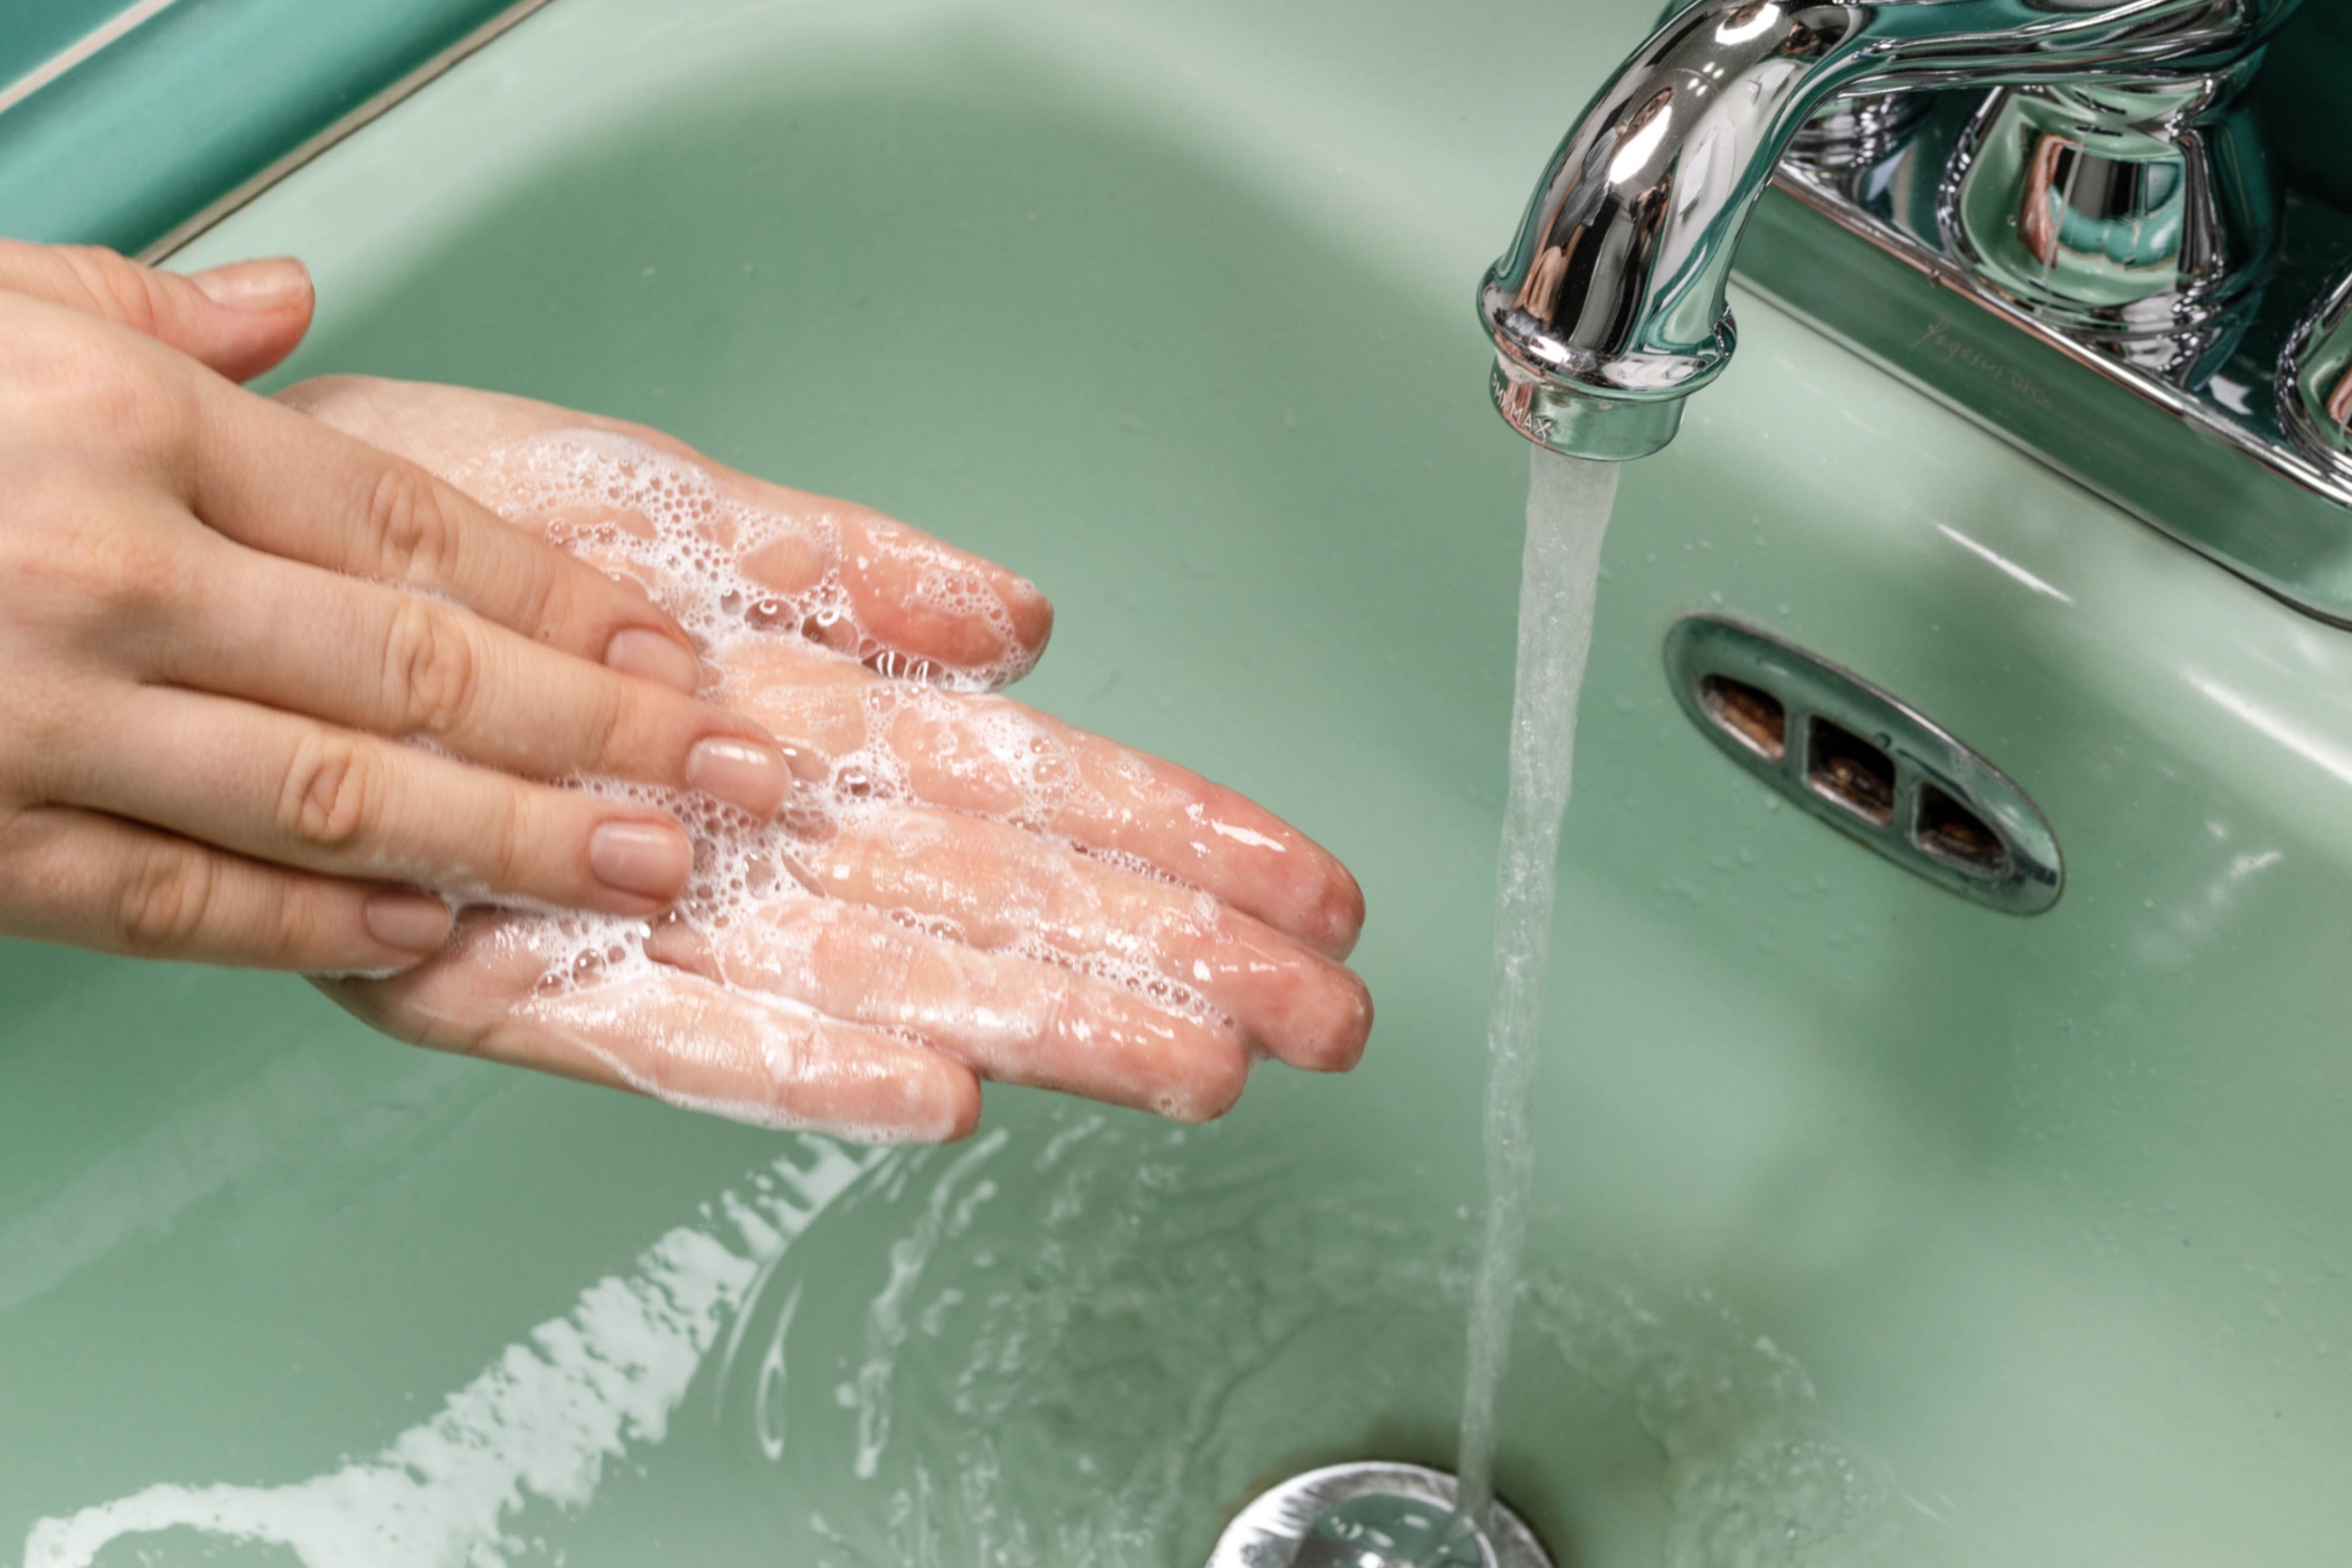 Lavarsi le mani correttamente